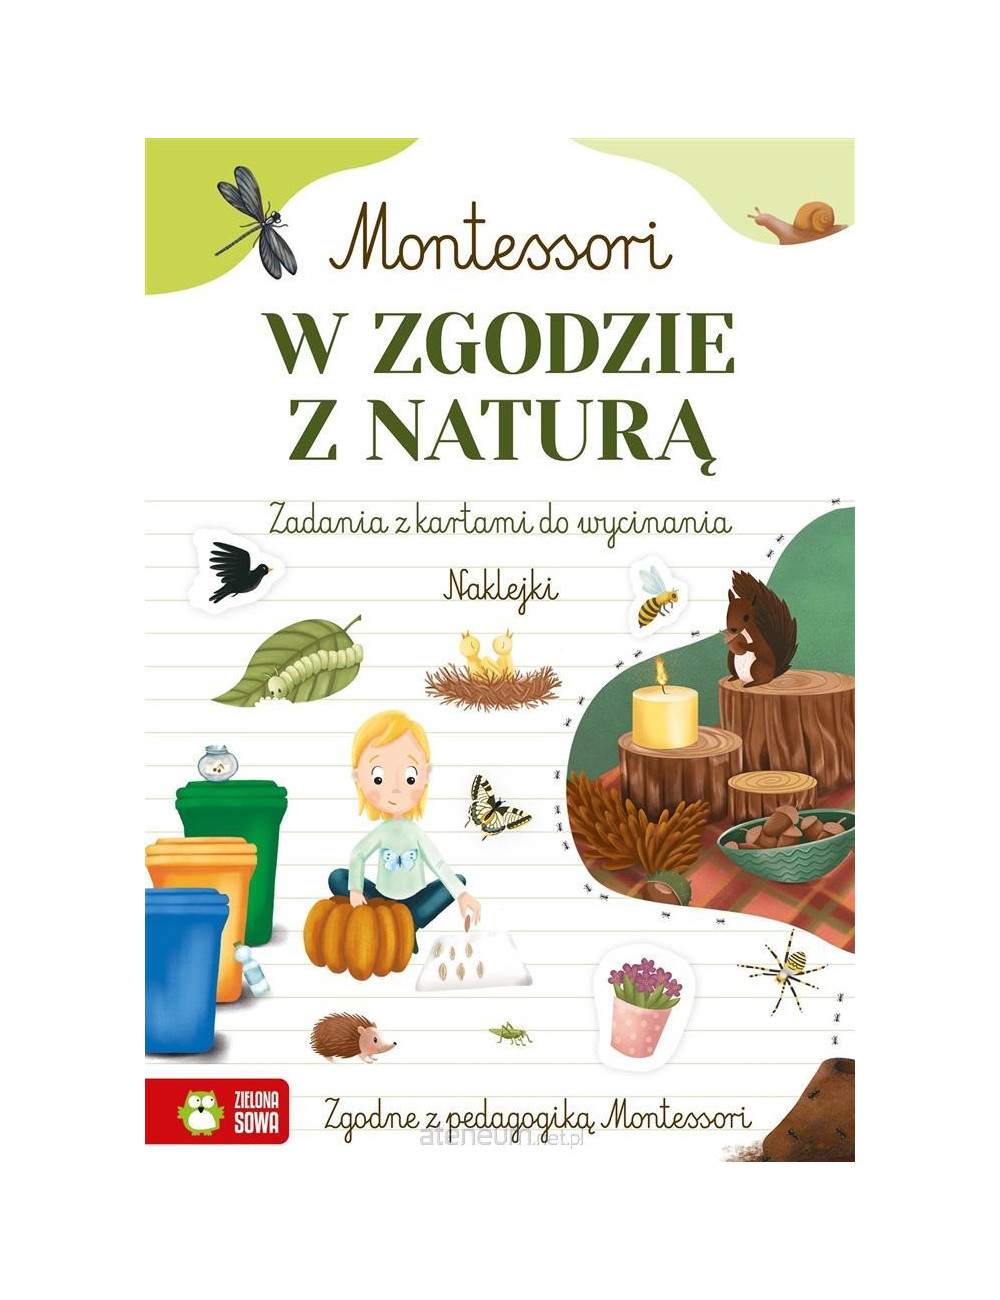 Montessori. Polska i świat, Zielona Sowa